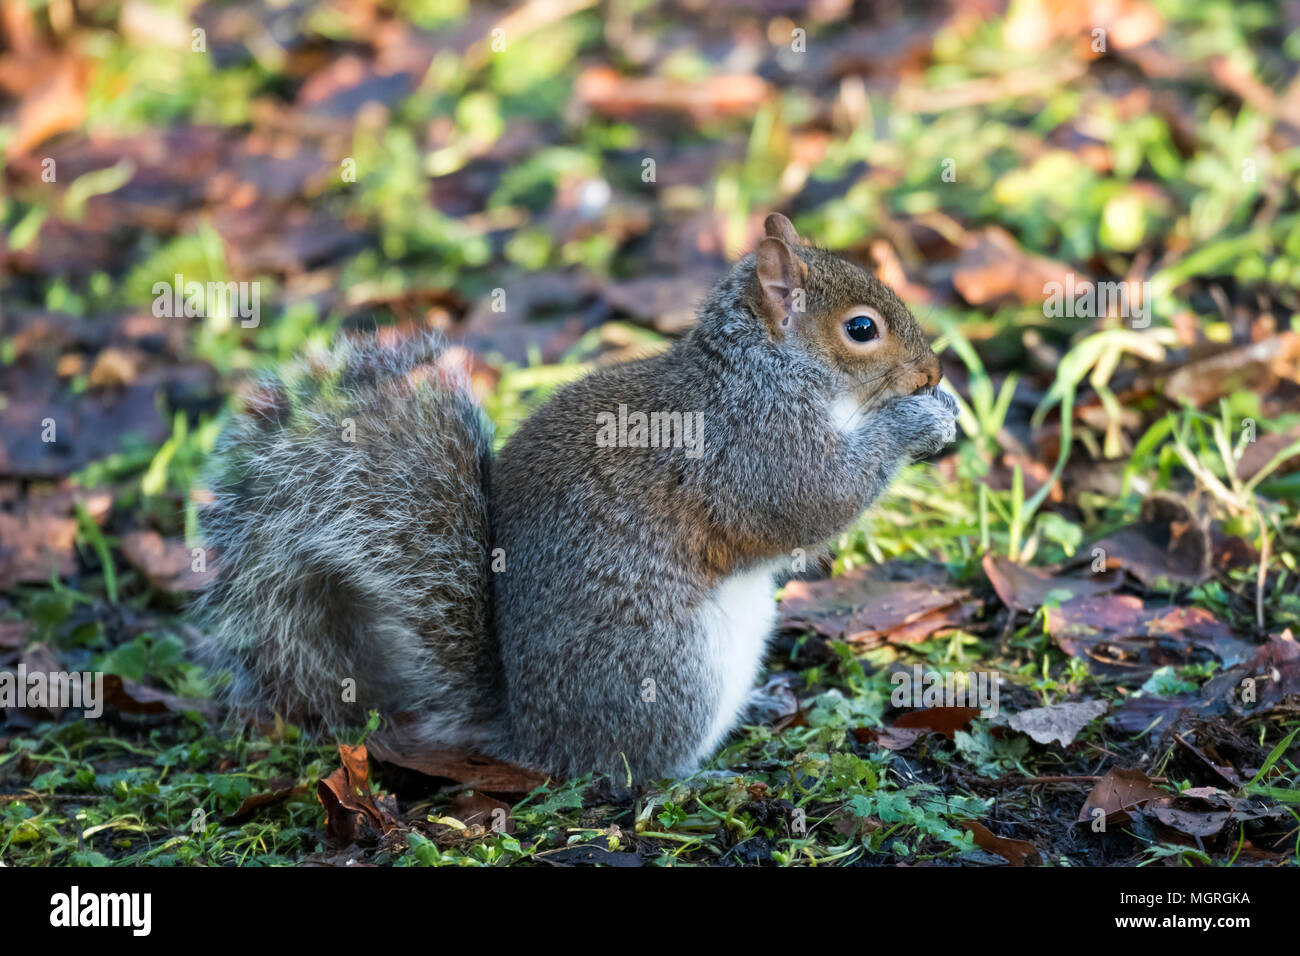 Close-up vista di profilo di scoiattolo grigio avanzamento sul terreno, zampe sollevate a bocca, la sua lunga coda folta arricciata - giardino, West Yorkshire, Inghilterra, Regno Unito. Foto Stock